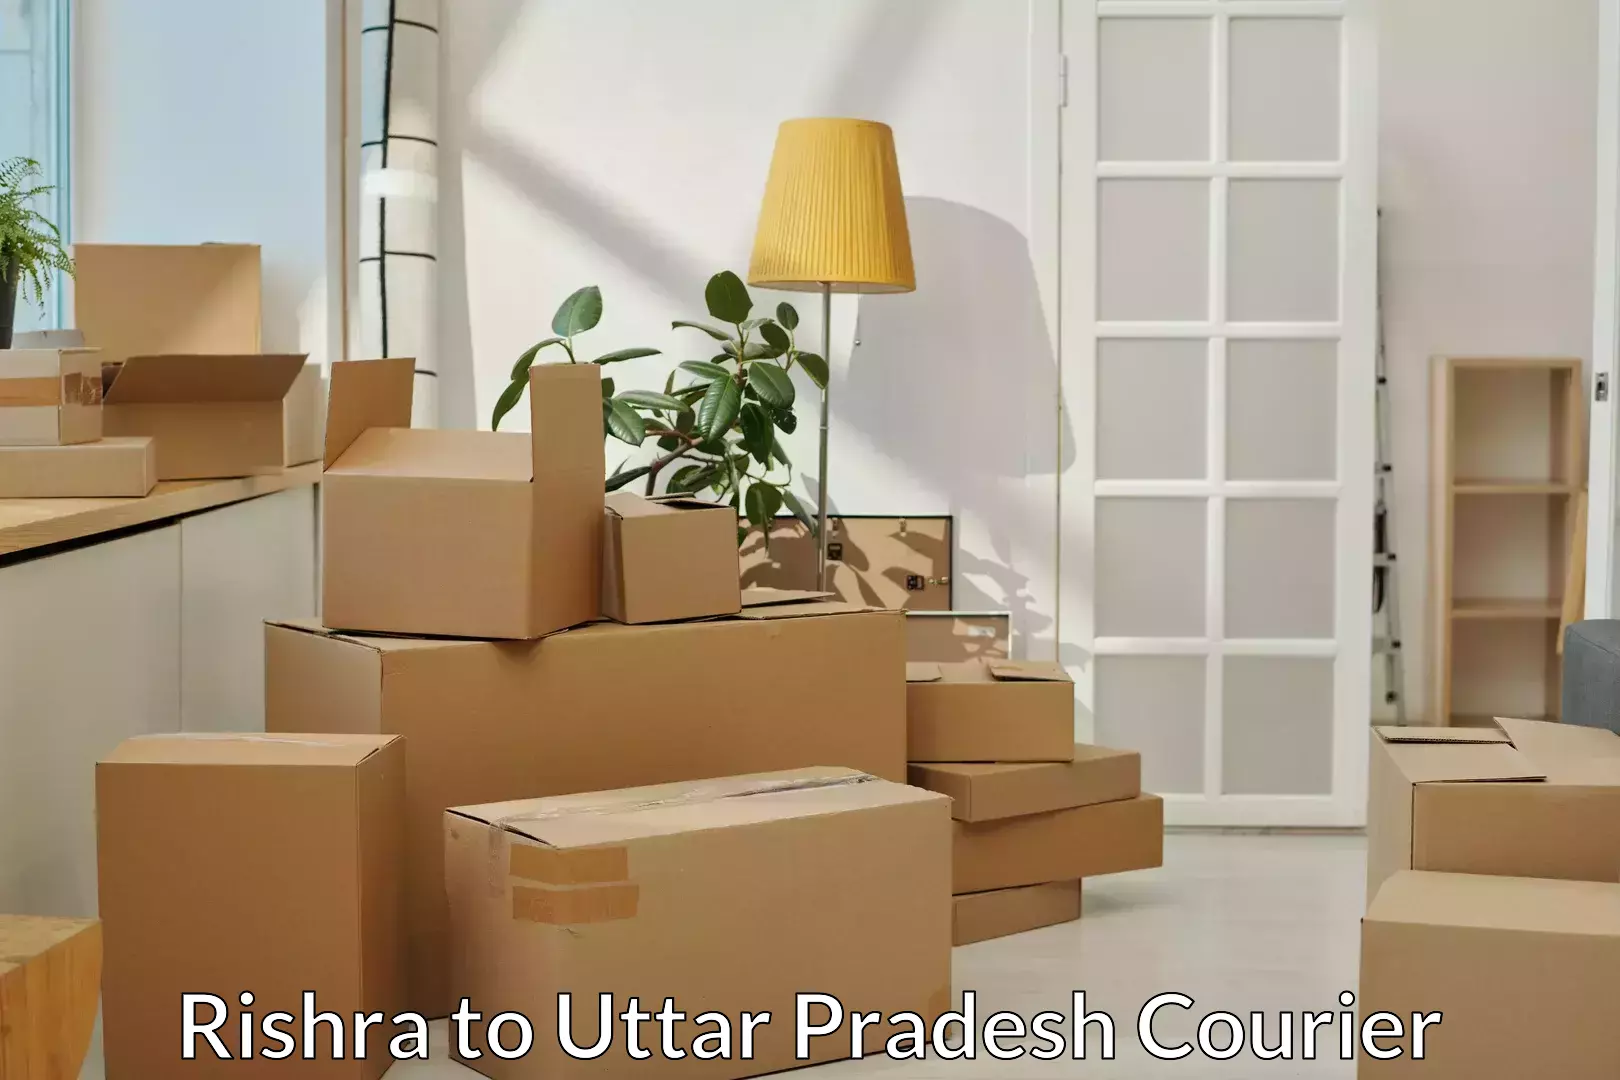 Furniture transport experts Rishra to Sahaswan